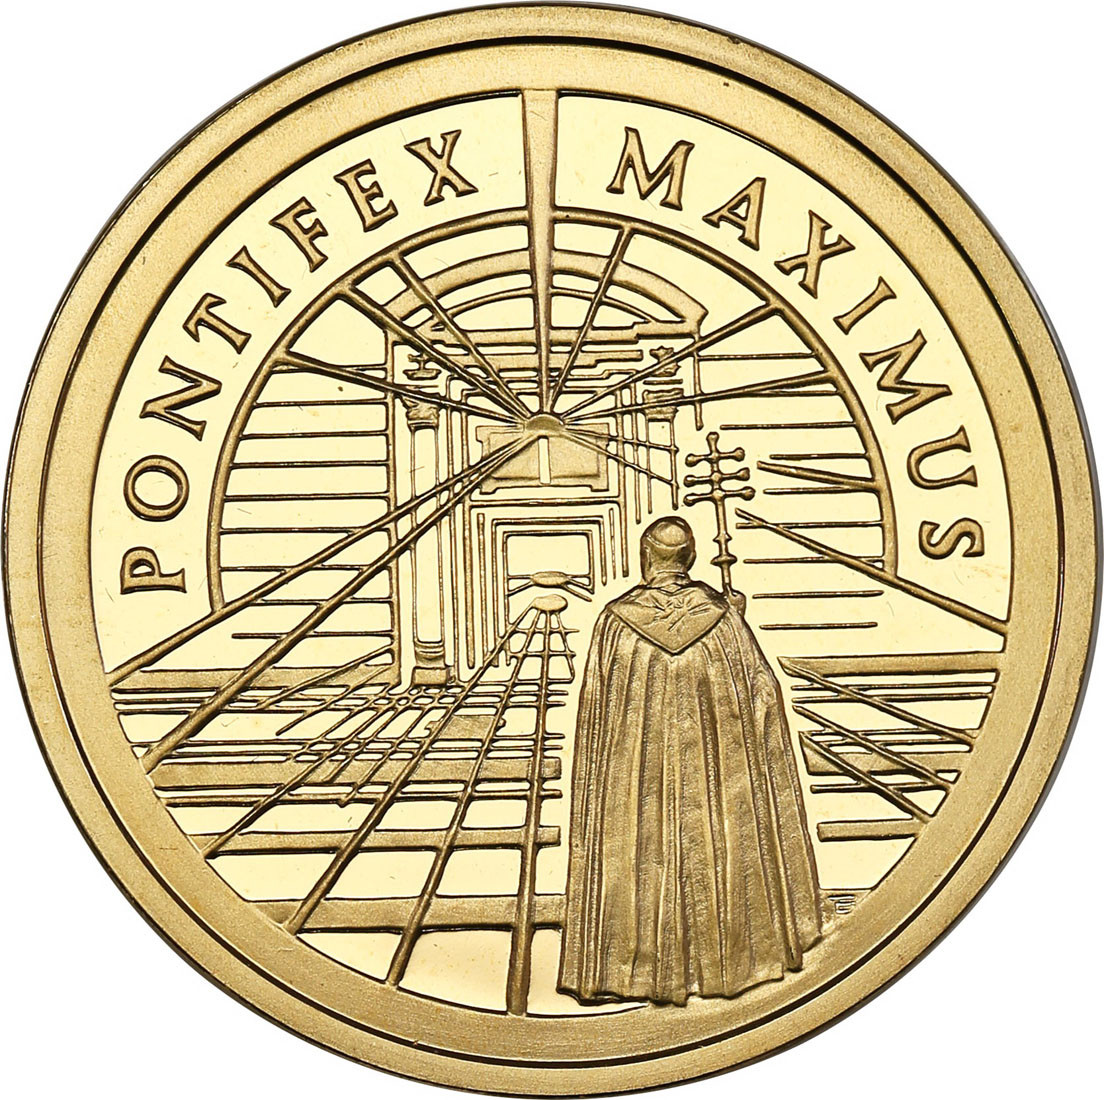 III RP. 200 złotych 2002 Papież Jan Paweł II - Pontifex Maximus